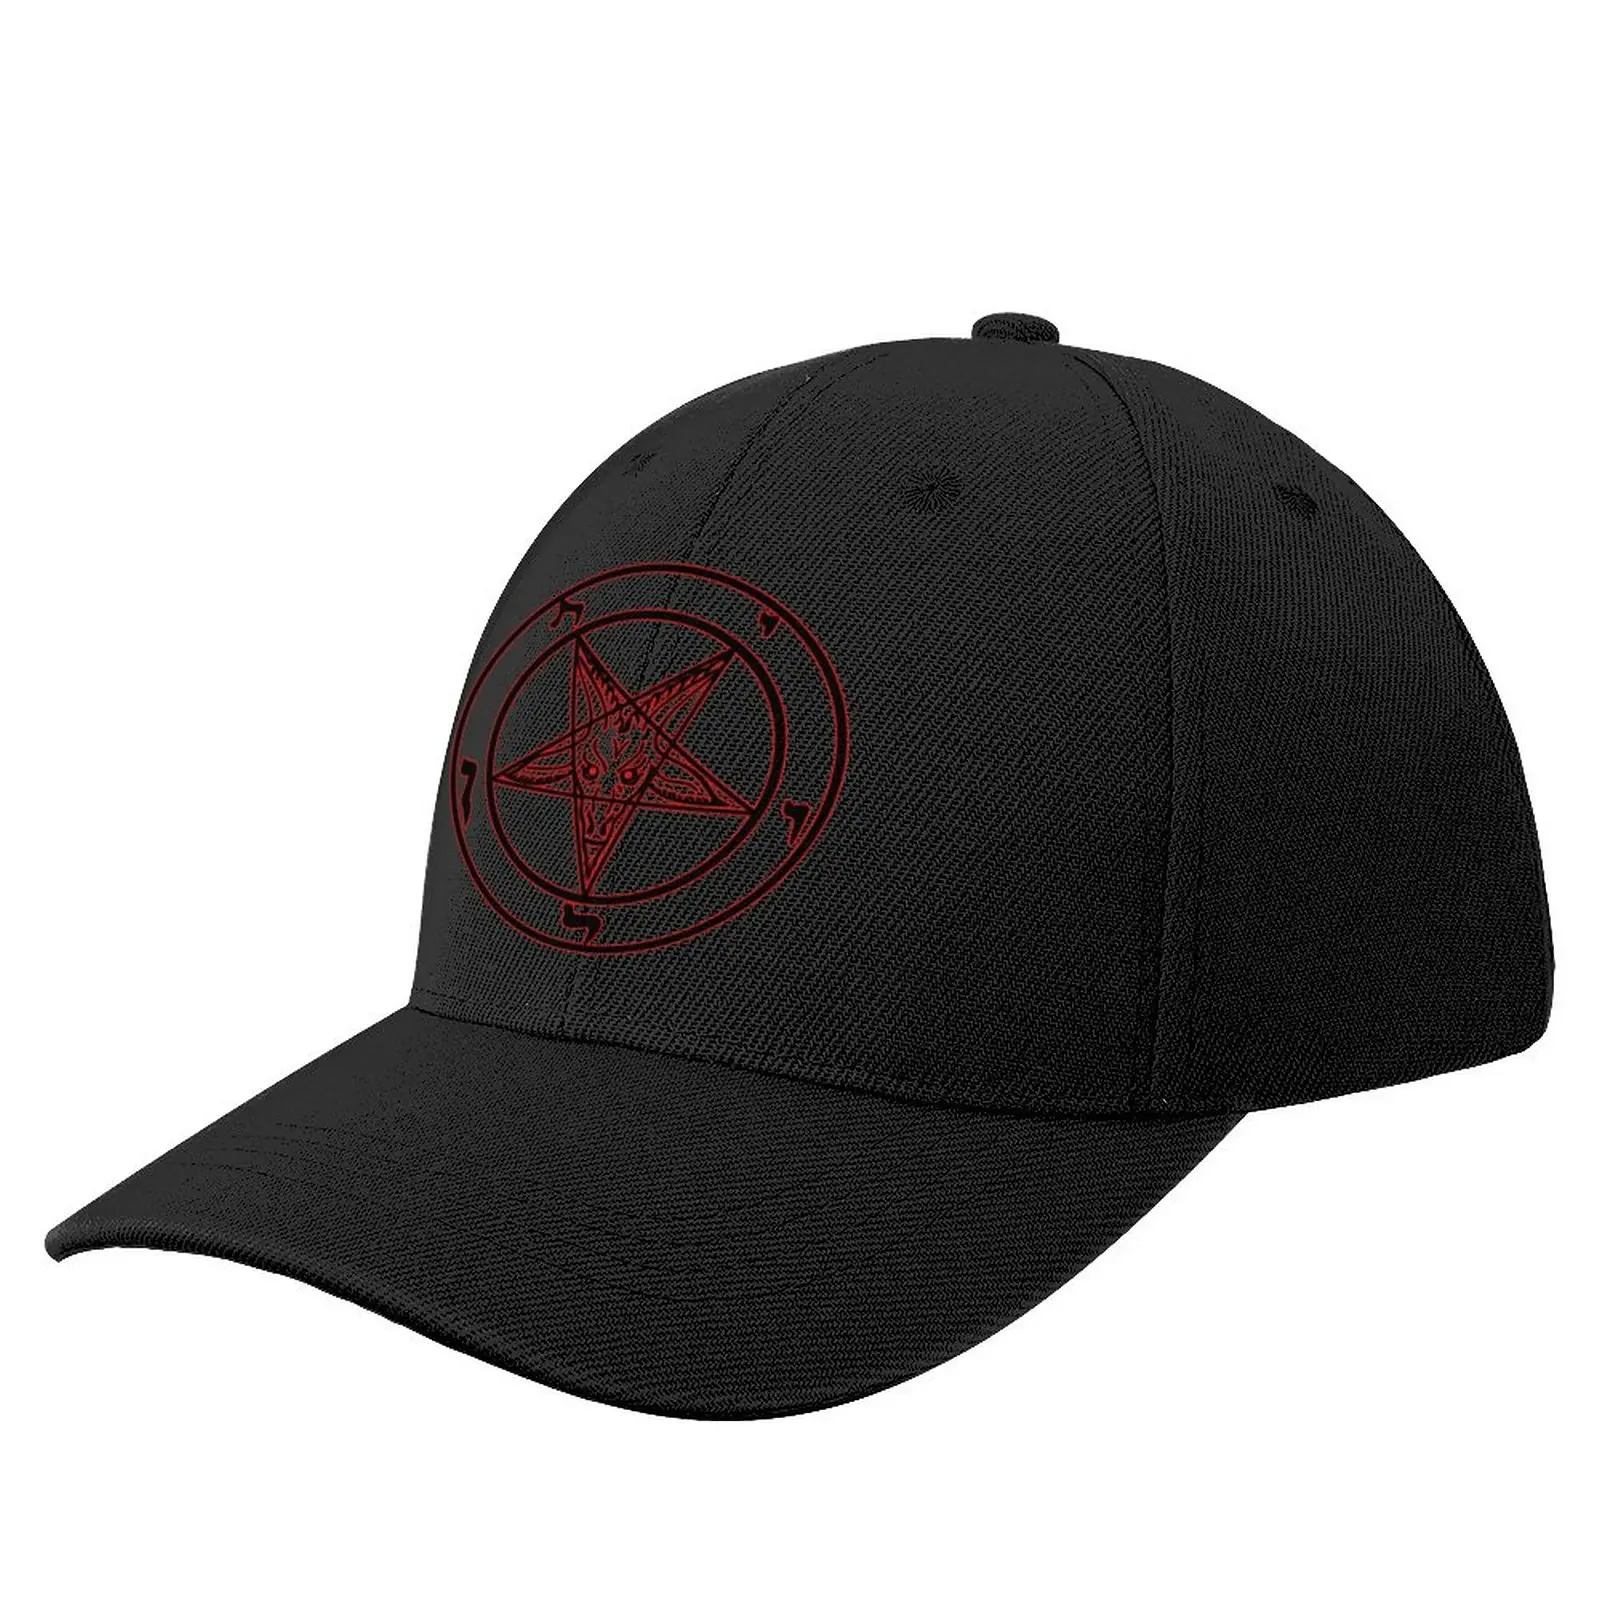 the goat pentagram Baseball Cap Golf Hat Golf Cap Bobble Hat Hats For Women Men's